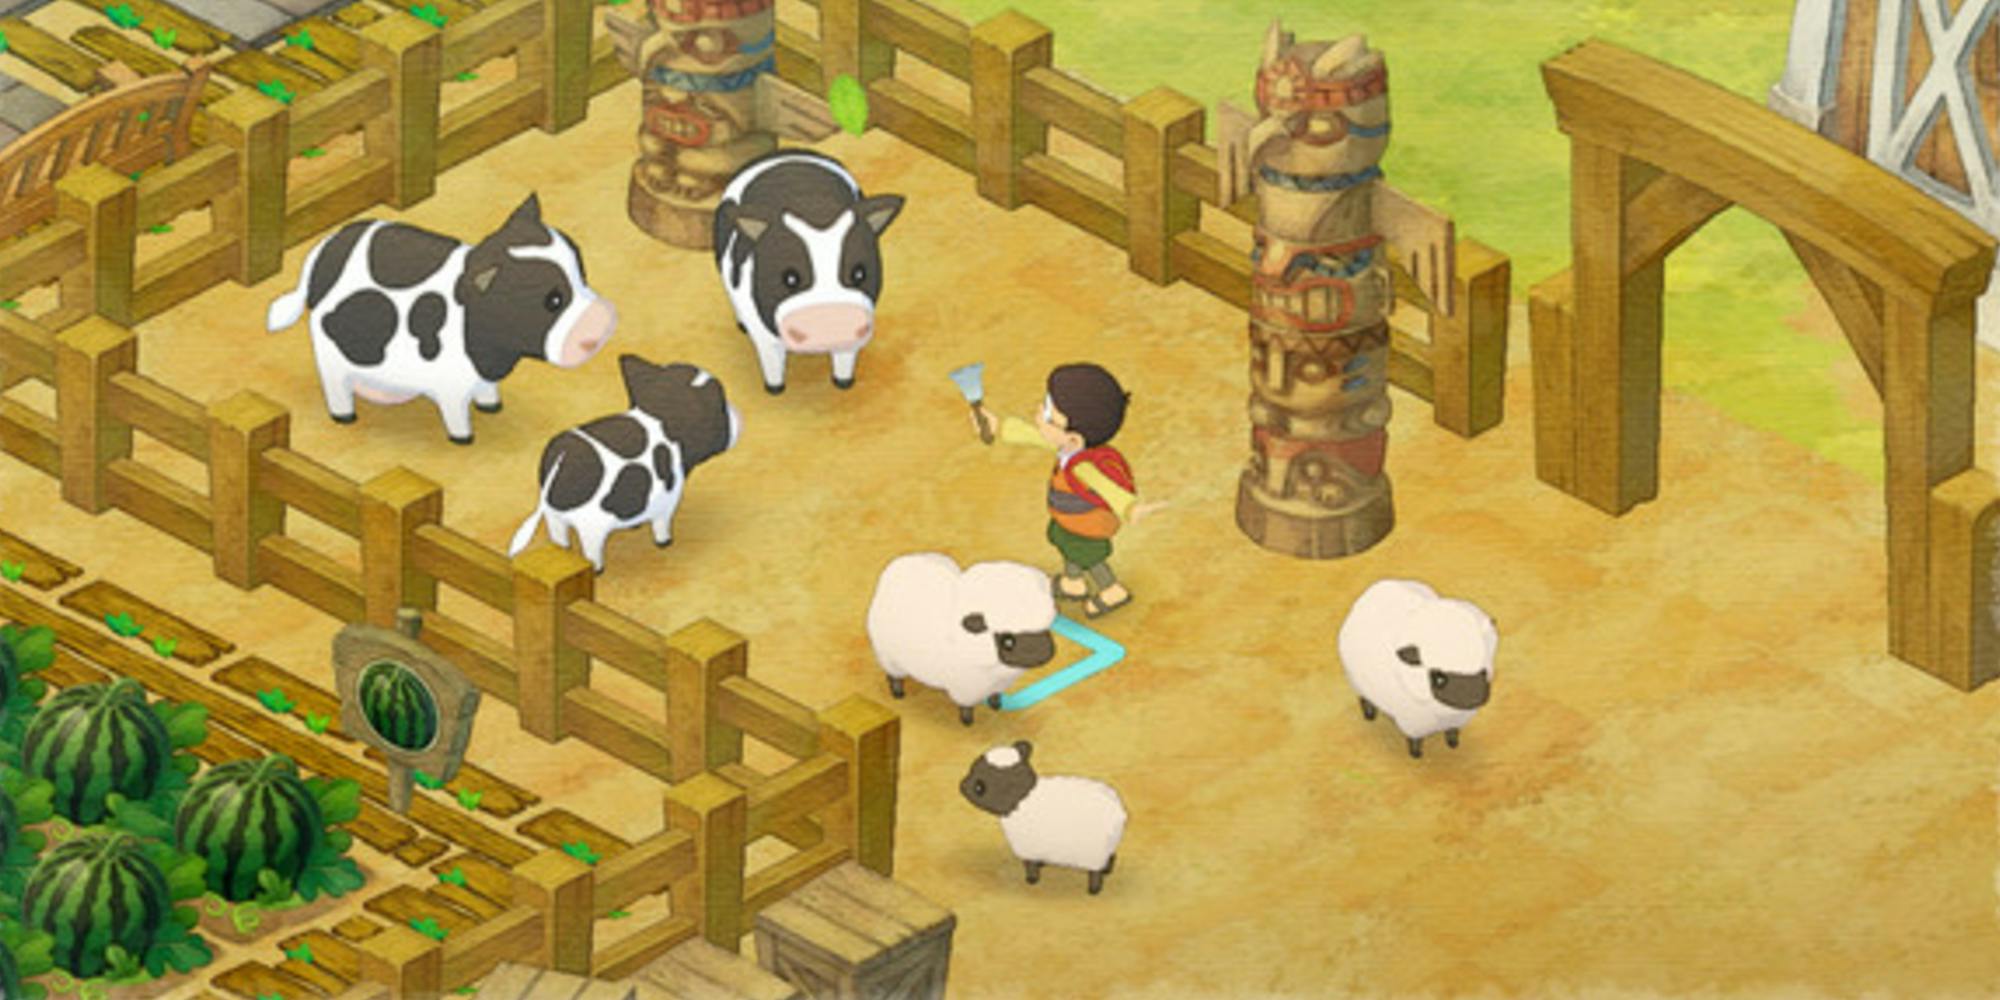 Farming scene from Doraemon Story of Seasons